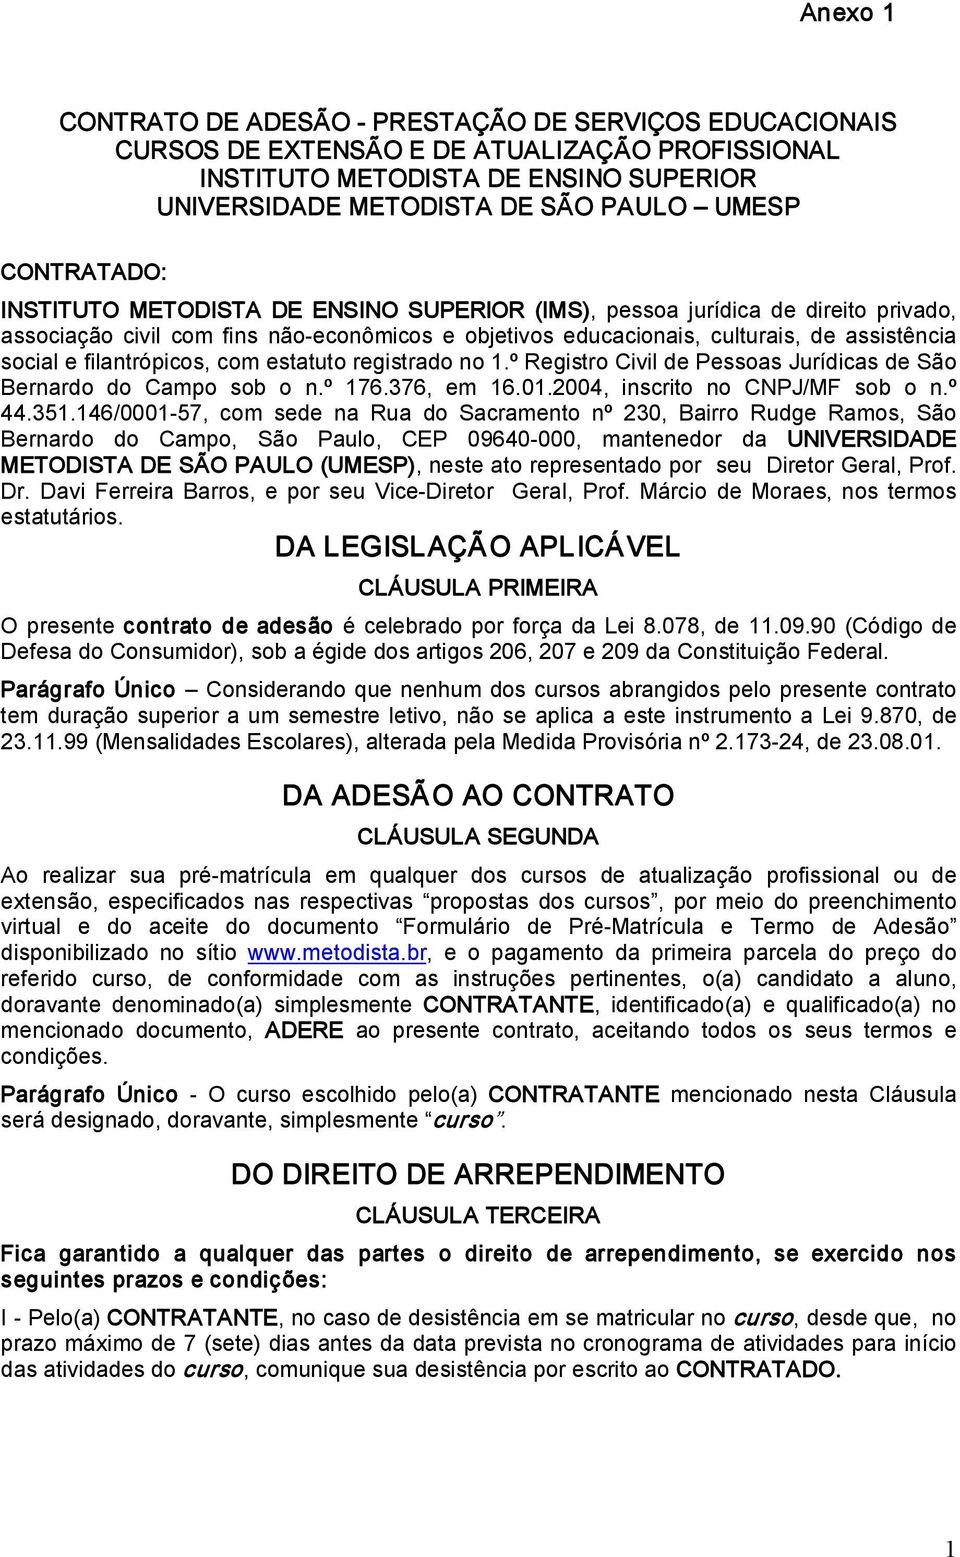 filantrópicos, com estatuto registrado no 1.º Registro Civil de Pessoas Jurídicas de São Bernardo do Campo sob o n.º 176.376, em 16.01.2004, inscrito no CNPJ/MF sob o n.º 44.351.